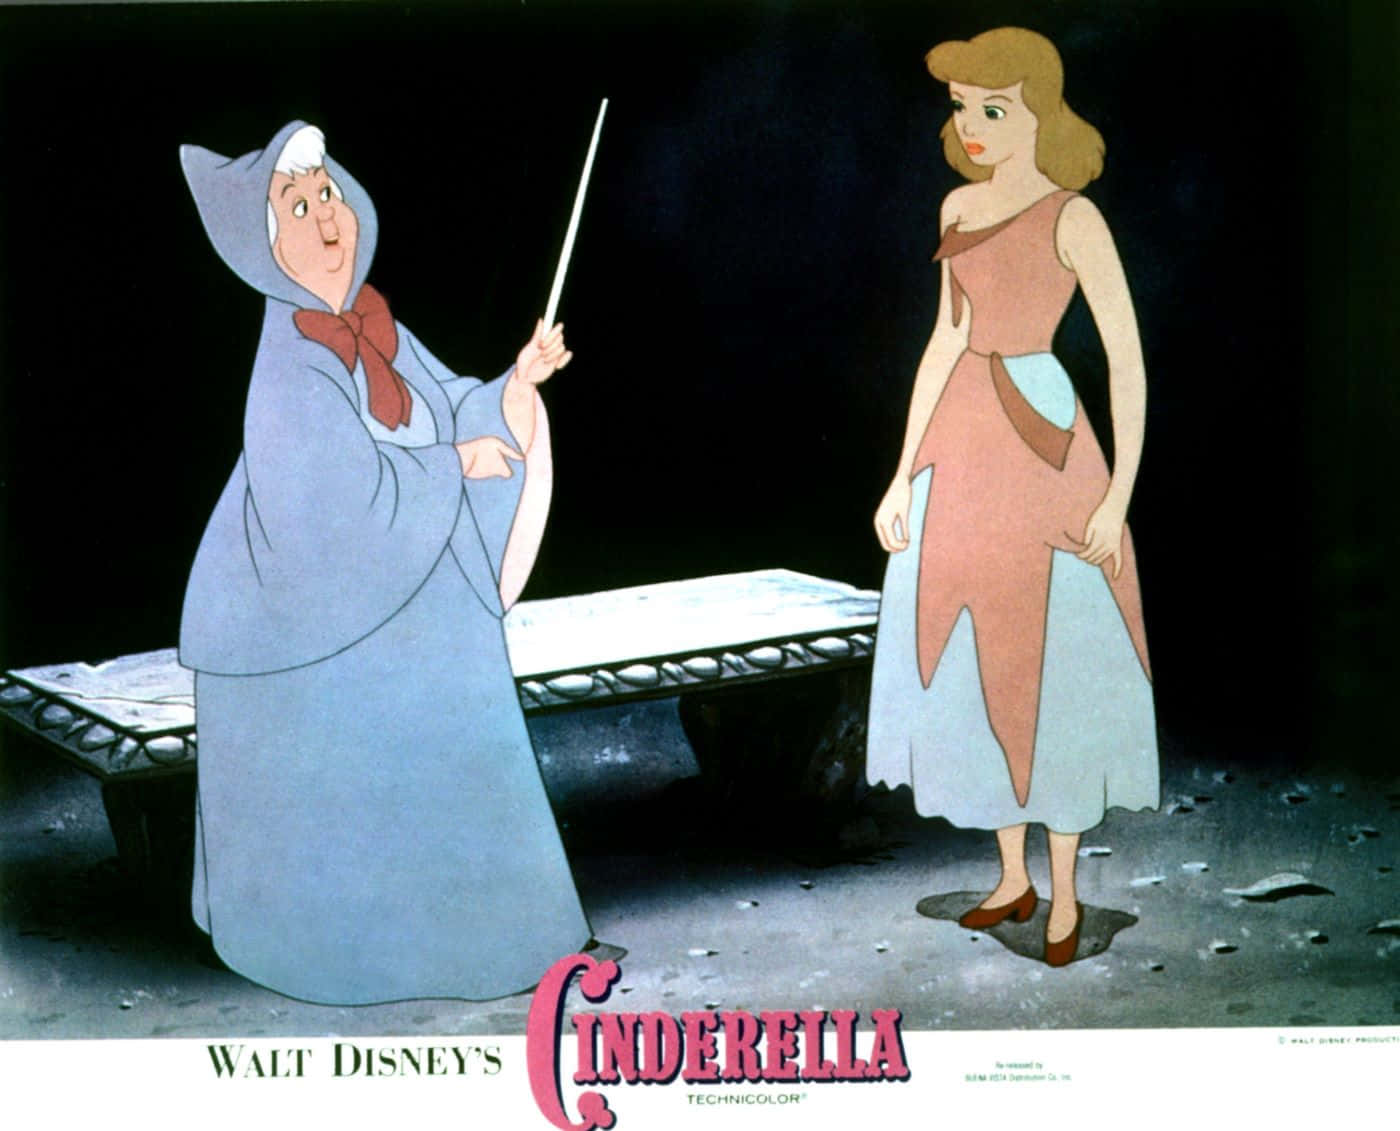 Disney's Classic Film, Cinderella